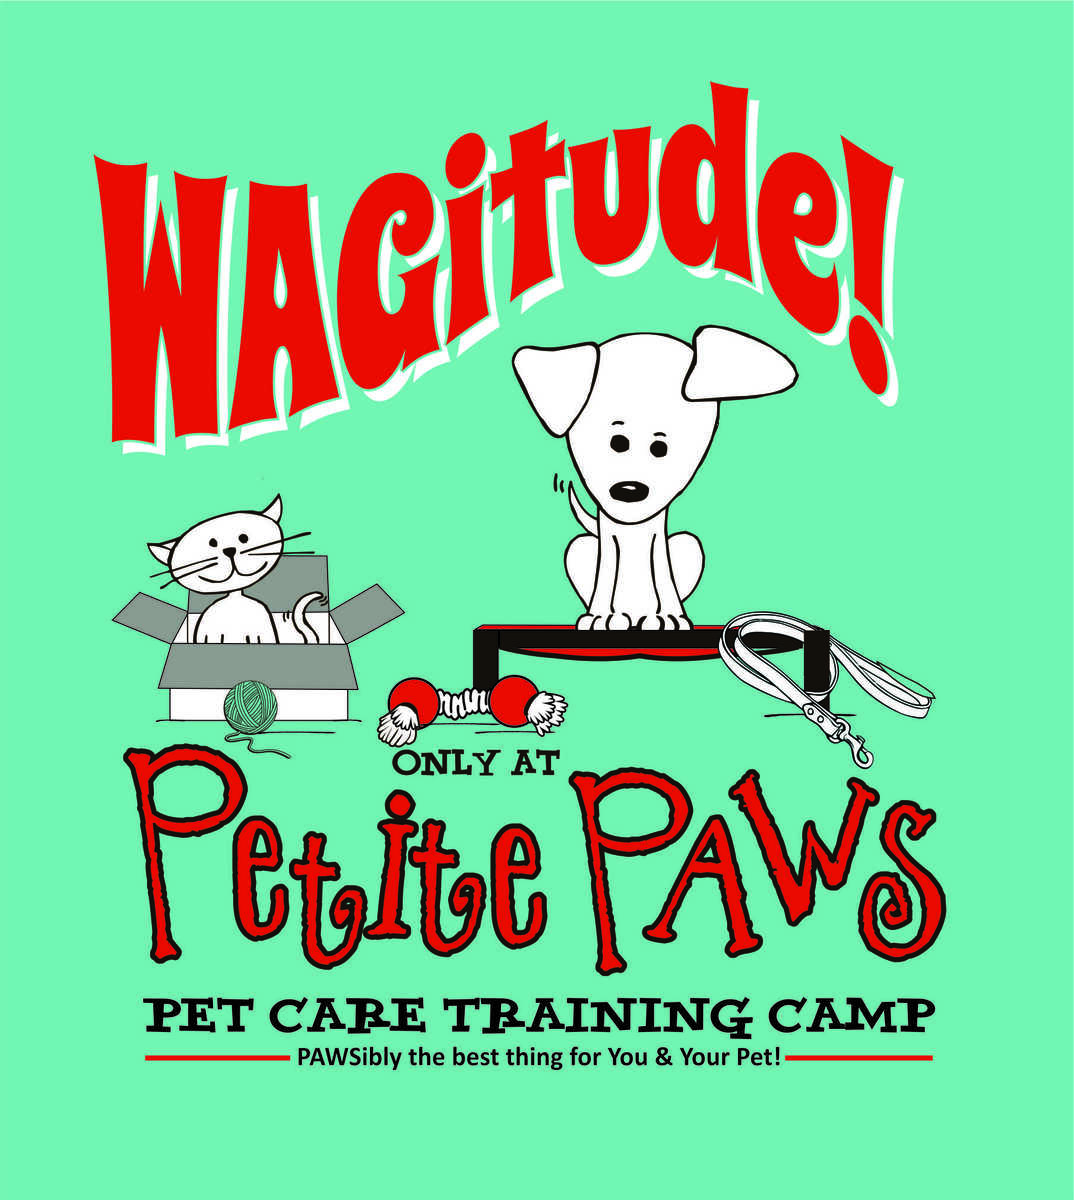 Petite Paws Training camp.jpg